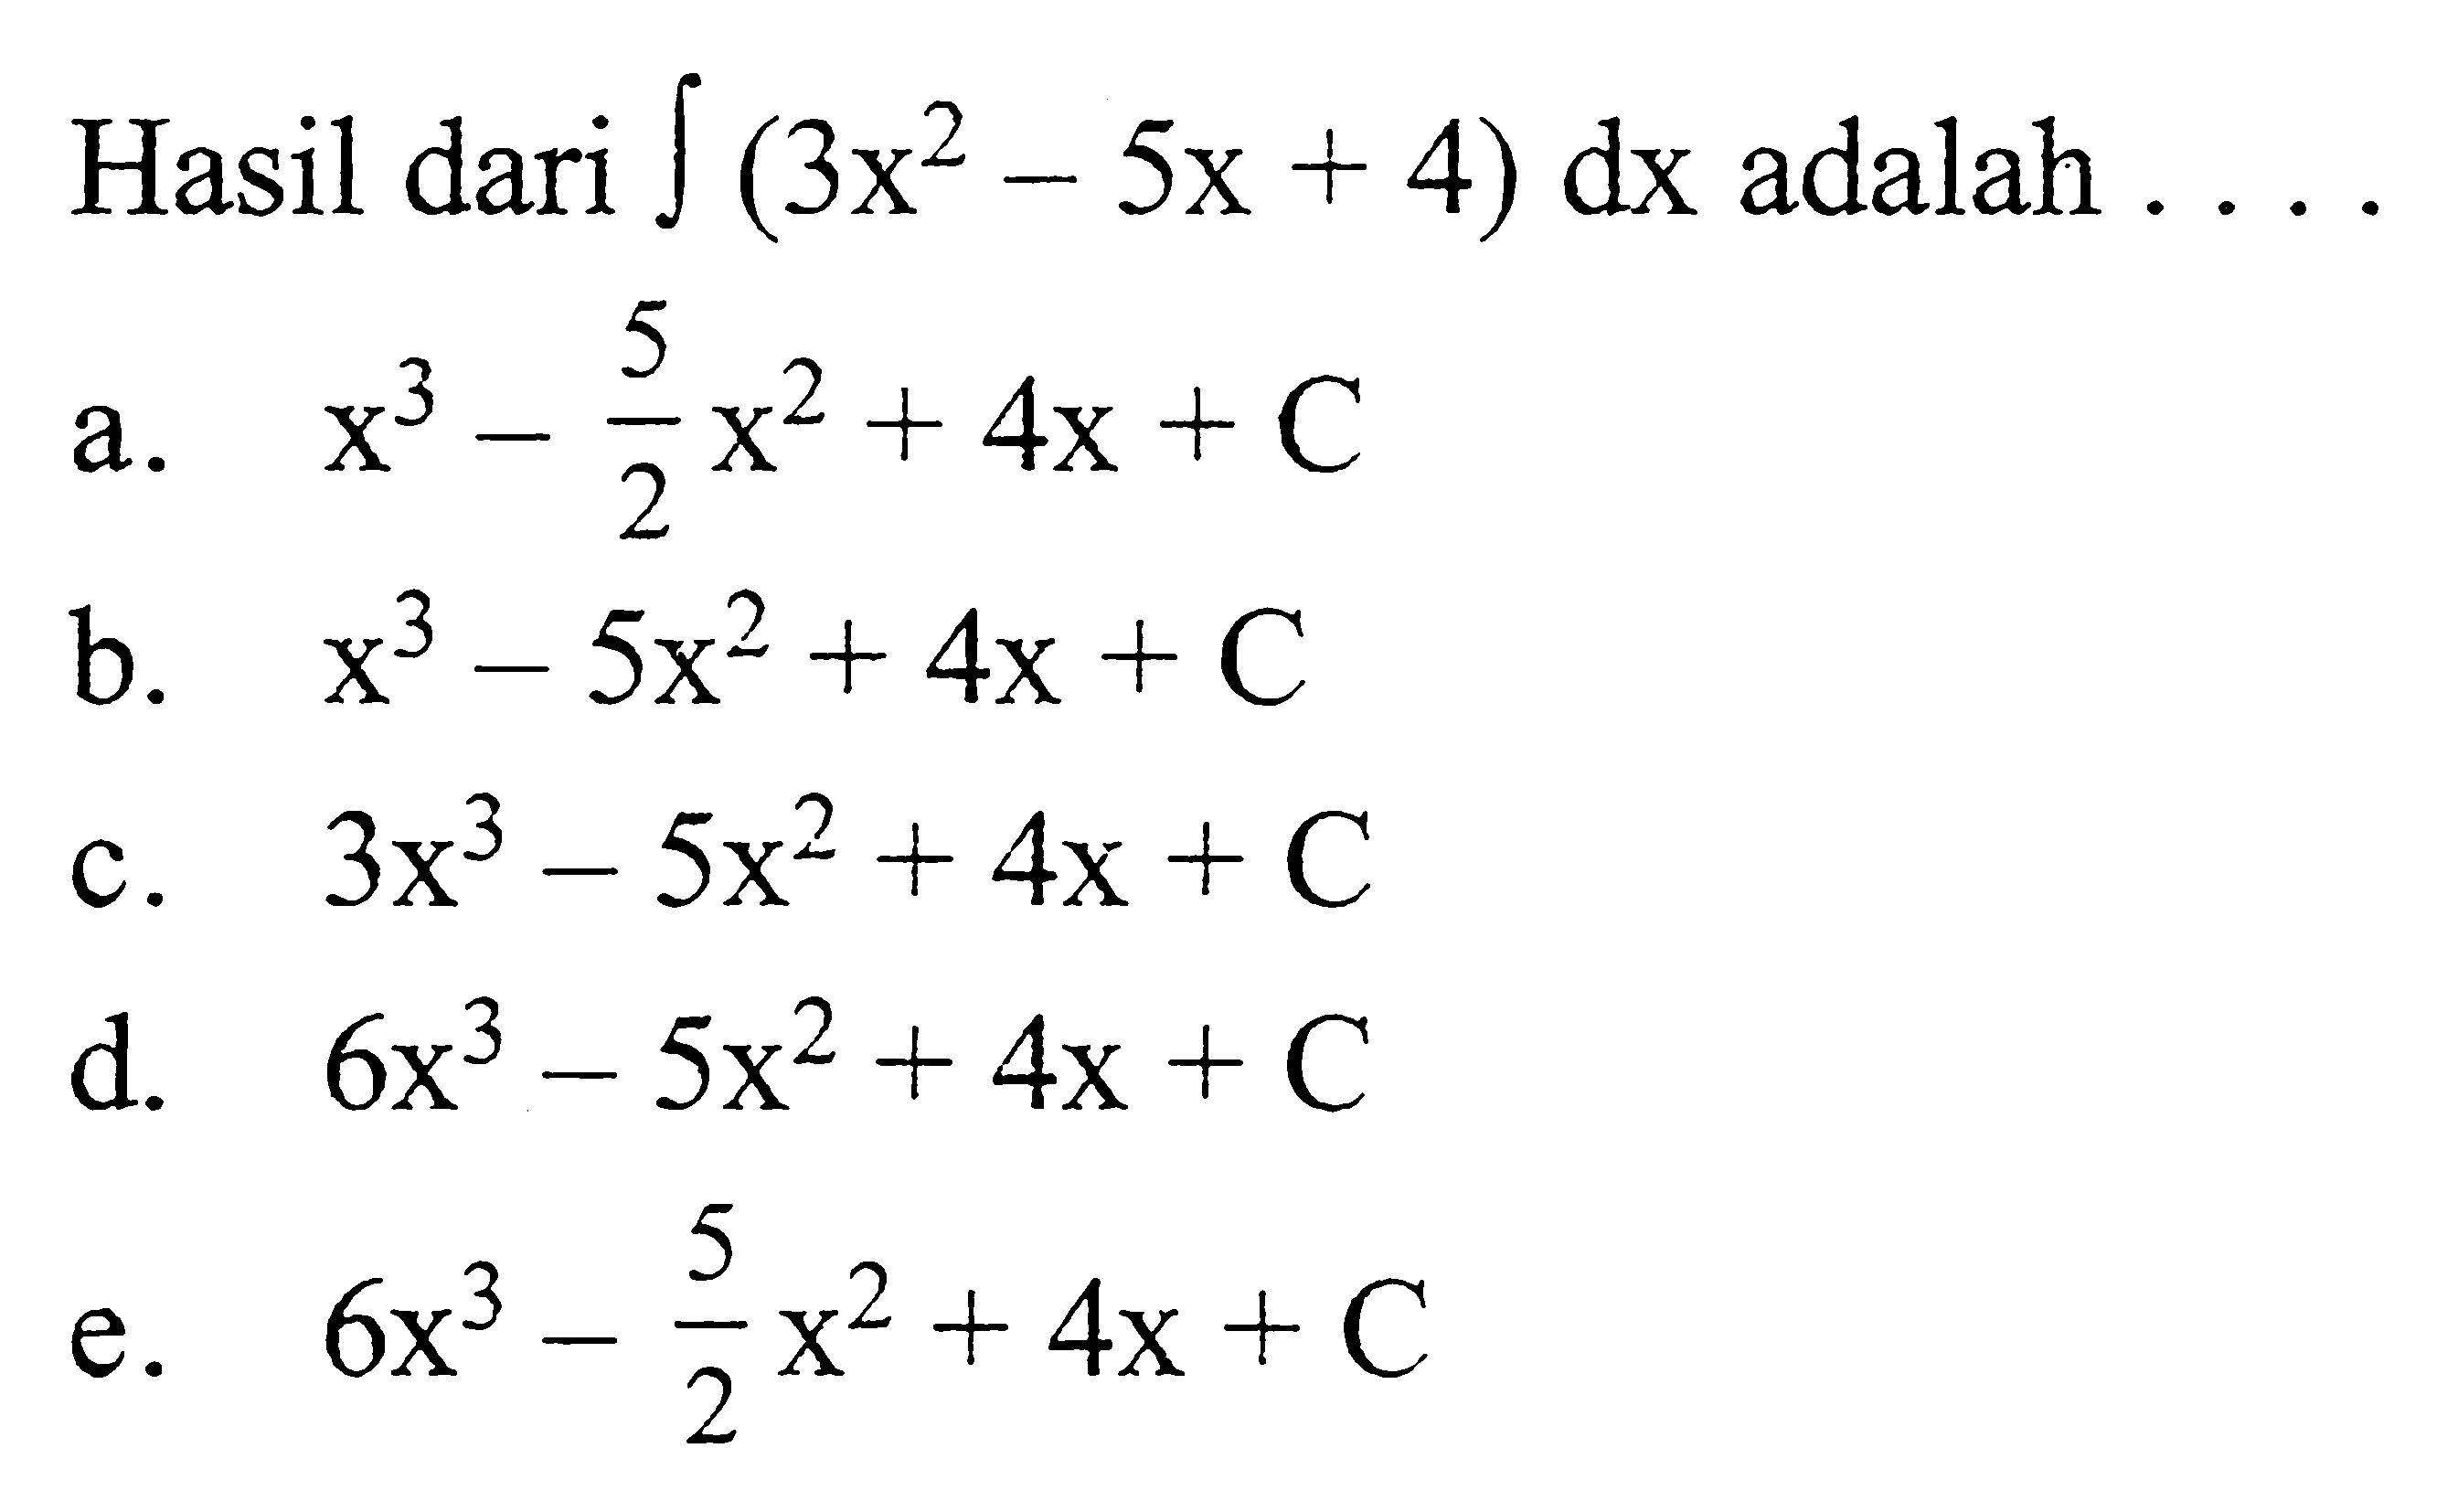 Hasil dari integral (3x^2-5x+4) dx  adalah  .... a. x^3-5/2x^2+4x+C b. x^3-5x^2+4x+C c.  3x^3-5x^2+4x+C d.  6x^3-5x^2+4x+C e.  6x^3-5/2x^2+4x+C 